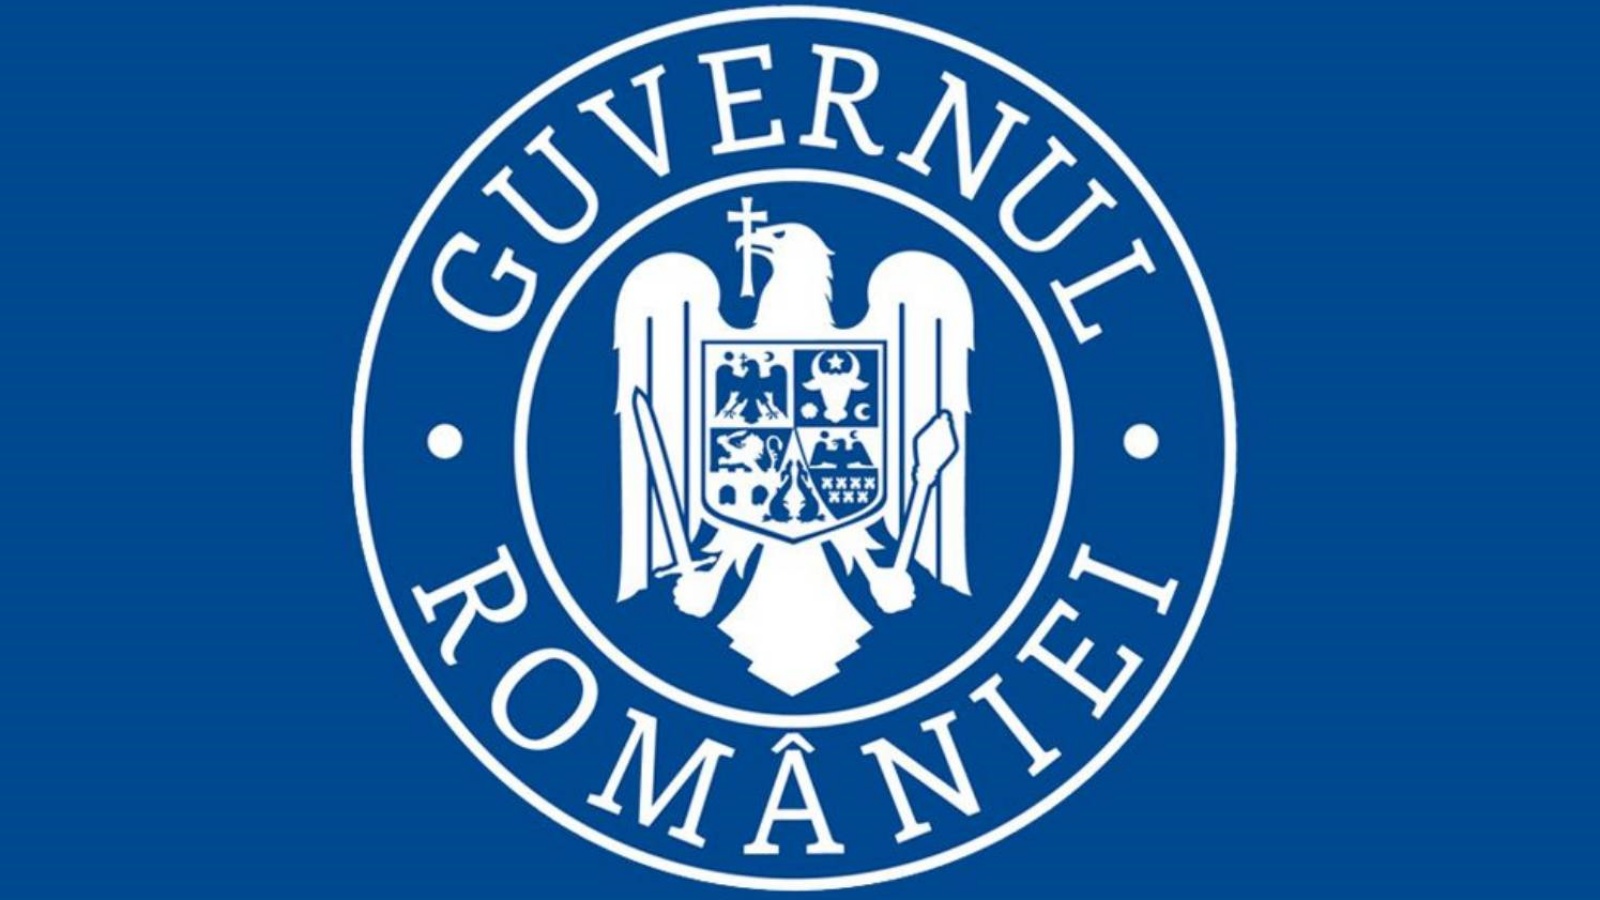 Romanian hallitus on tähän mennessä rokotettu 5.8 miljoonaa romanialaista